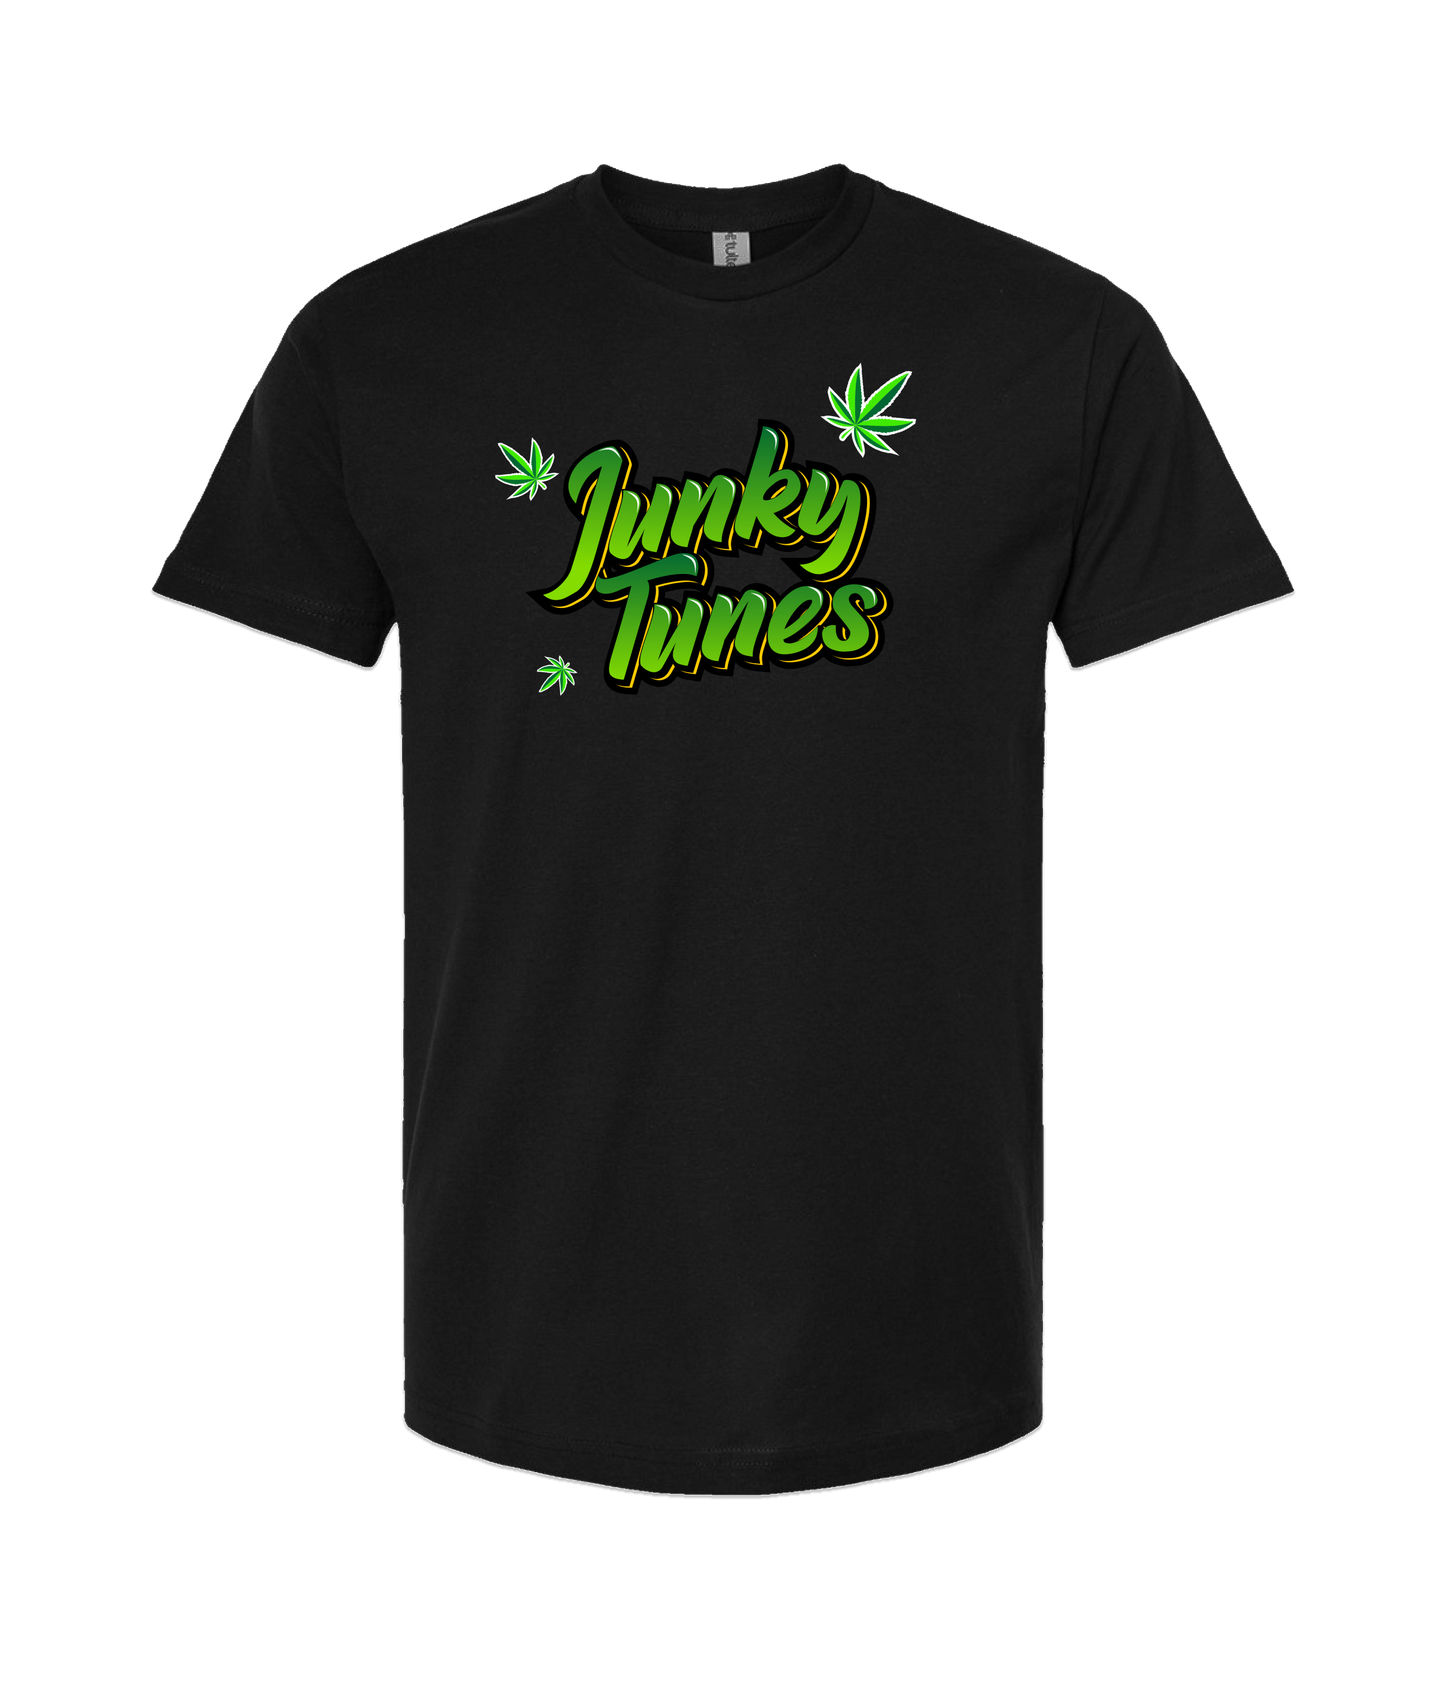 JunkyTunes - Logo Green - Black T-Shirt